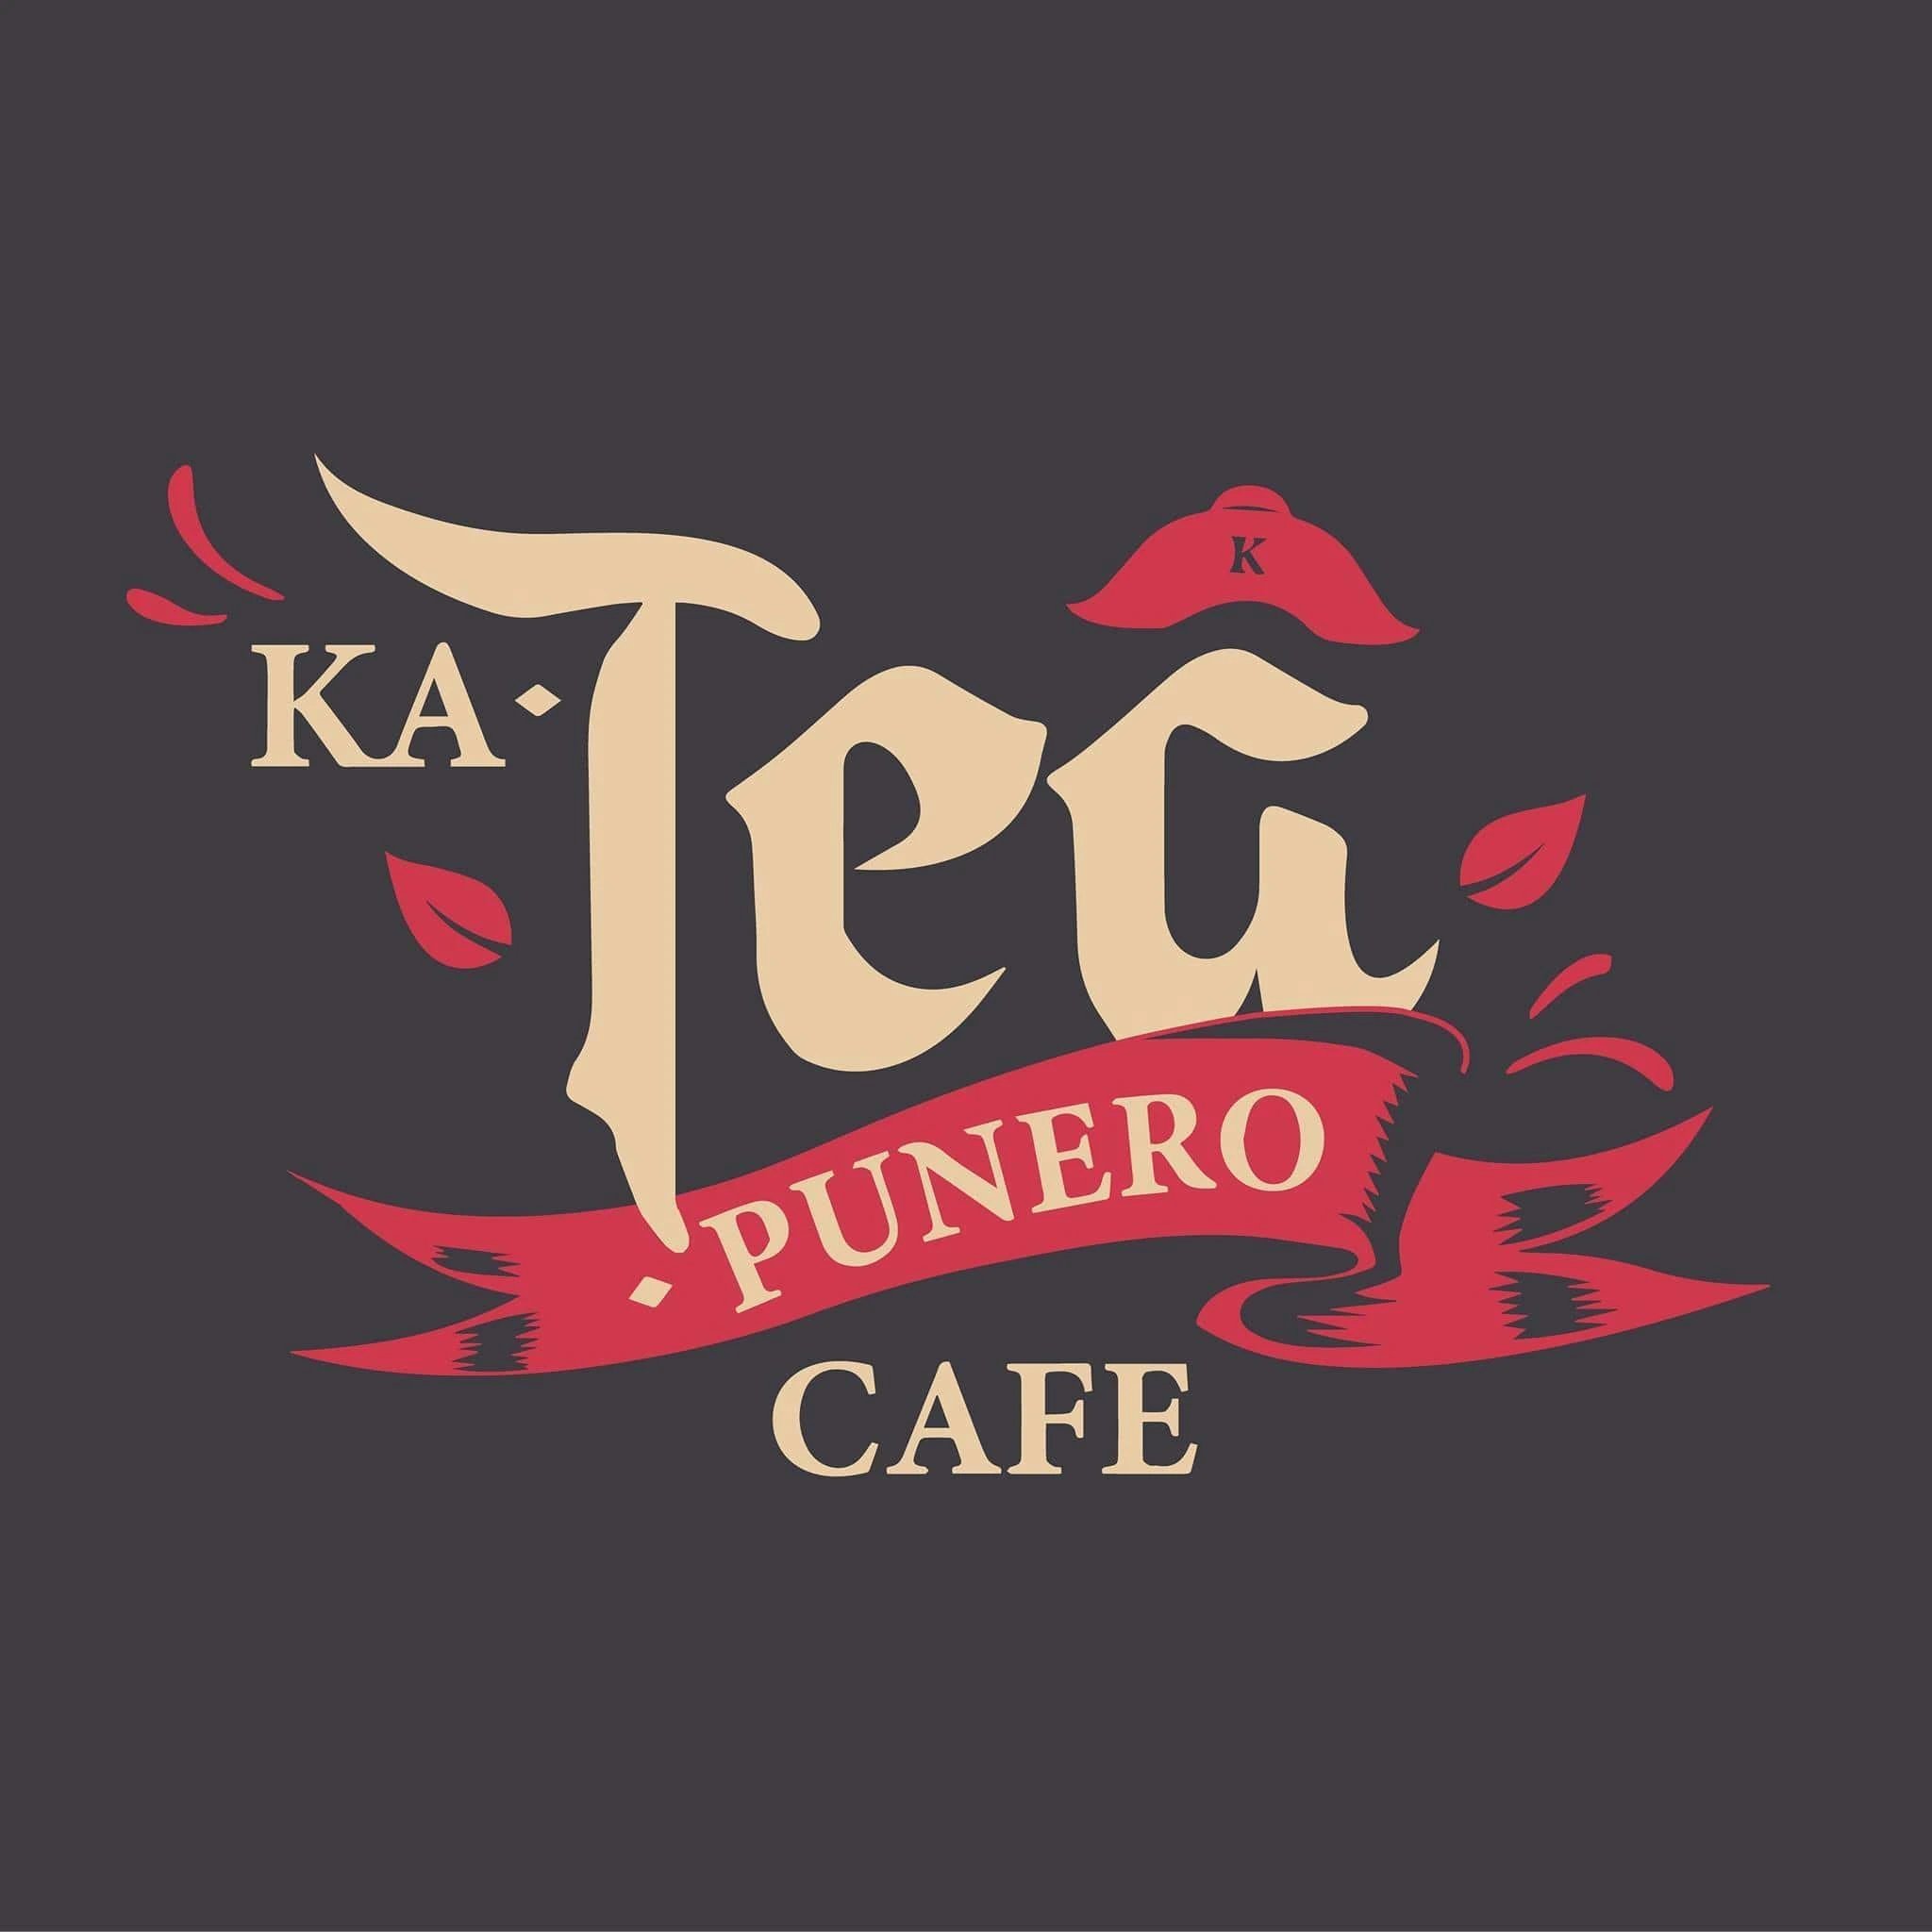 Logo - KeTeaPunero Cafe